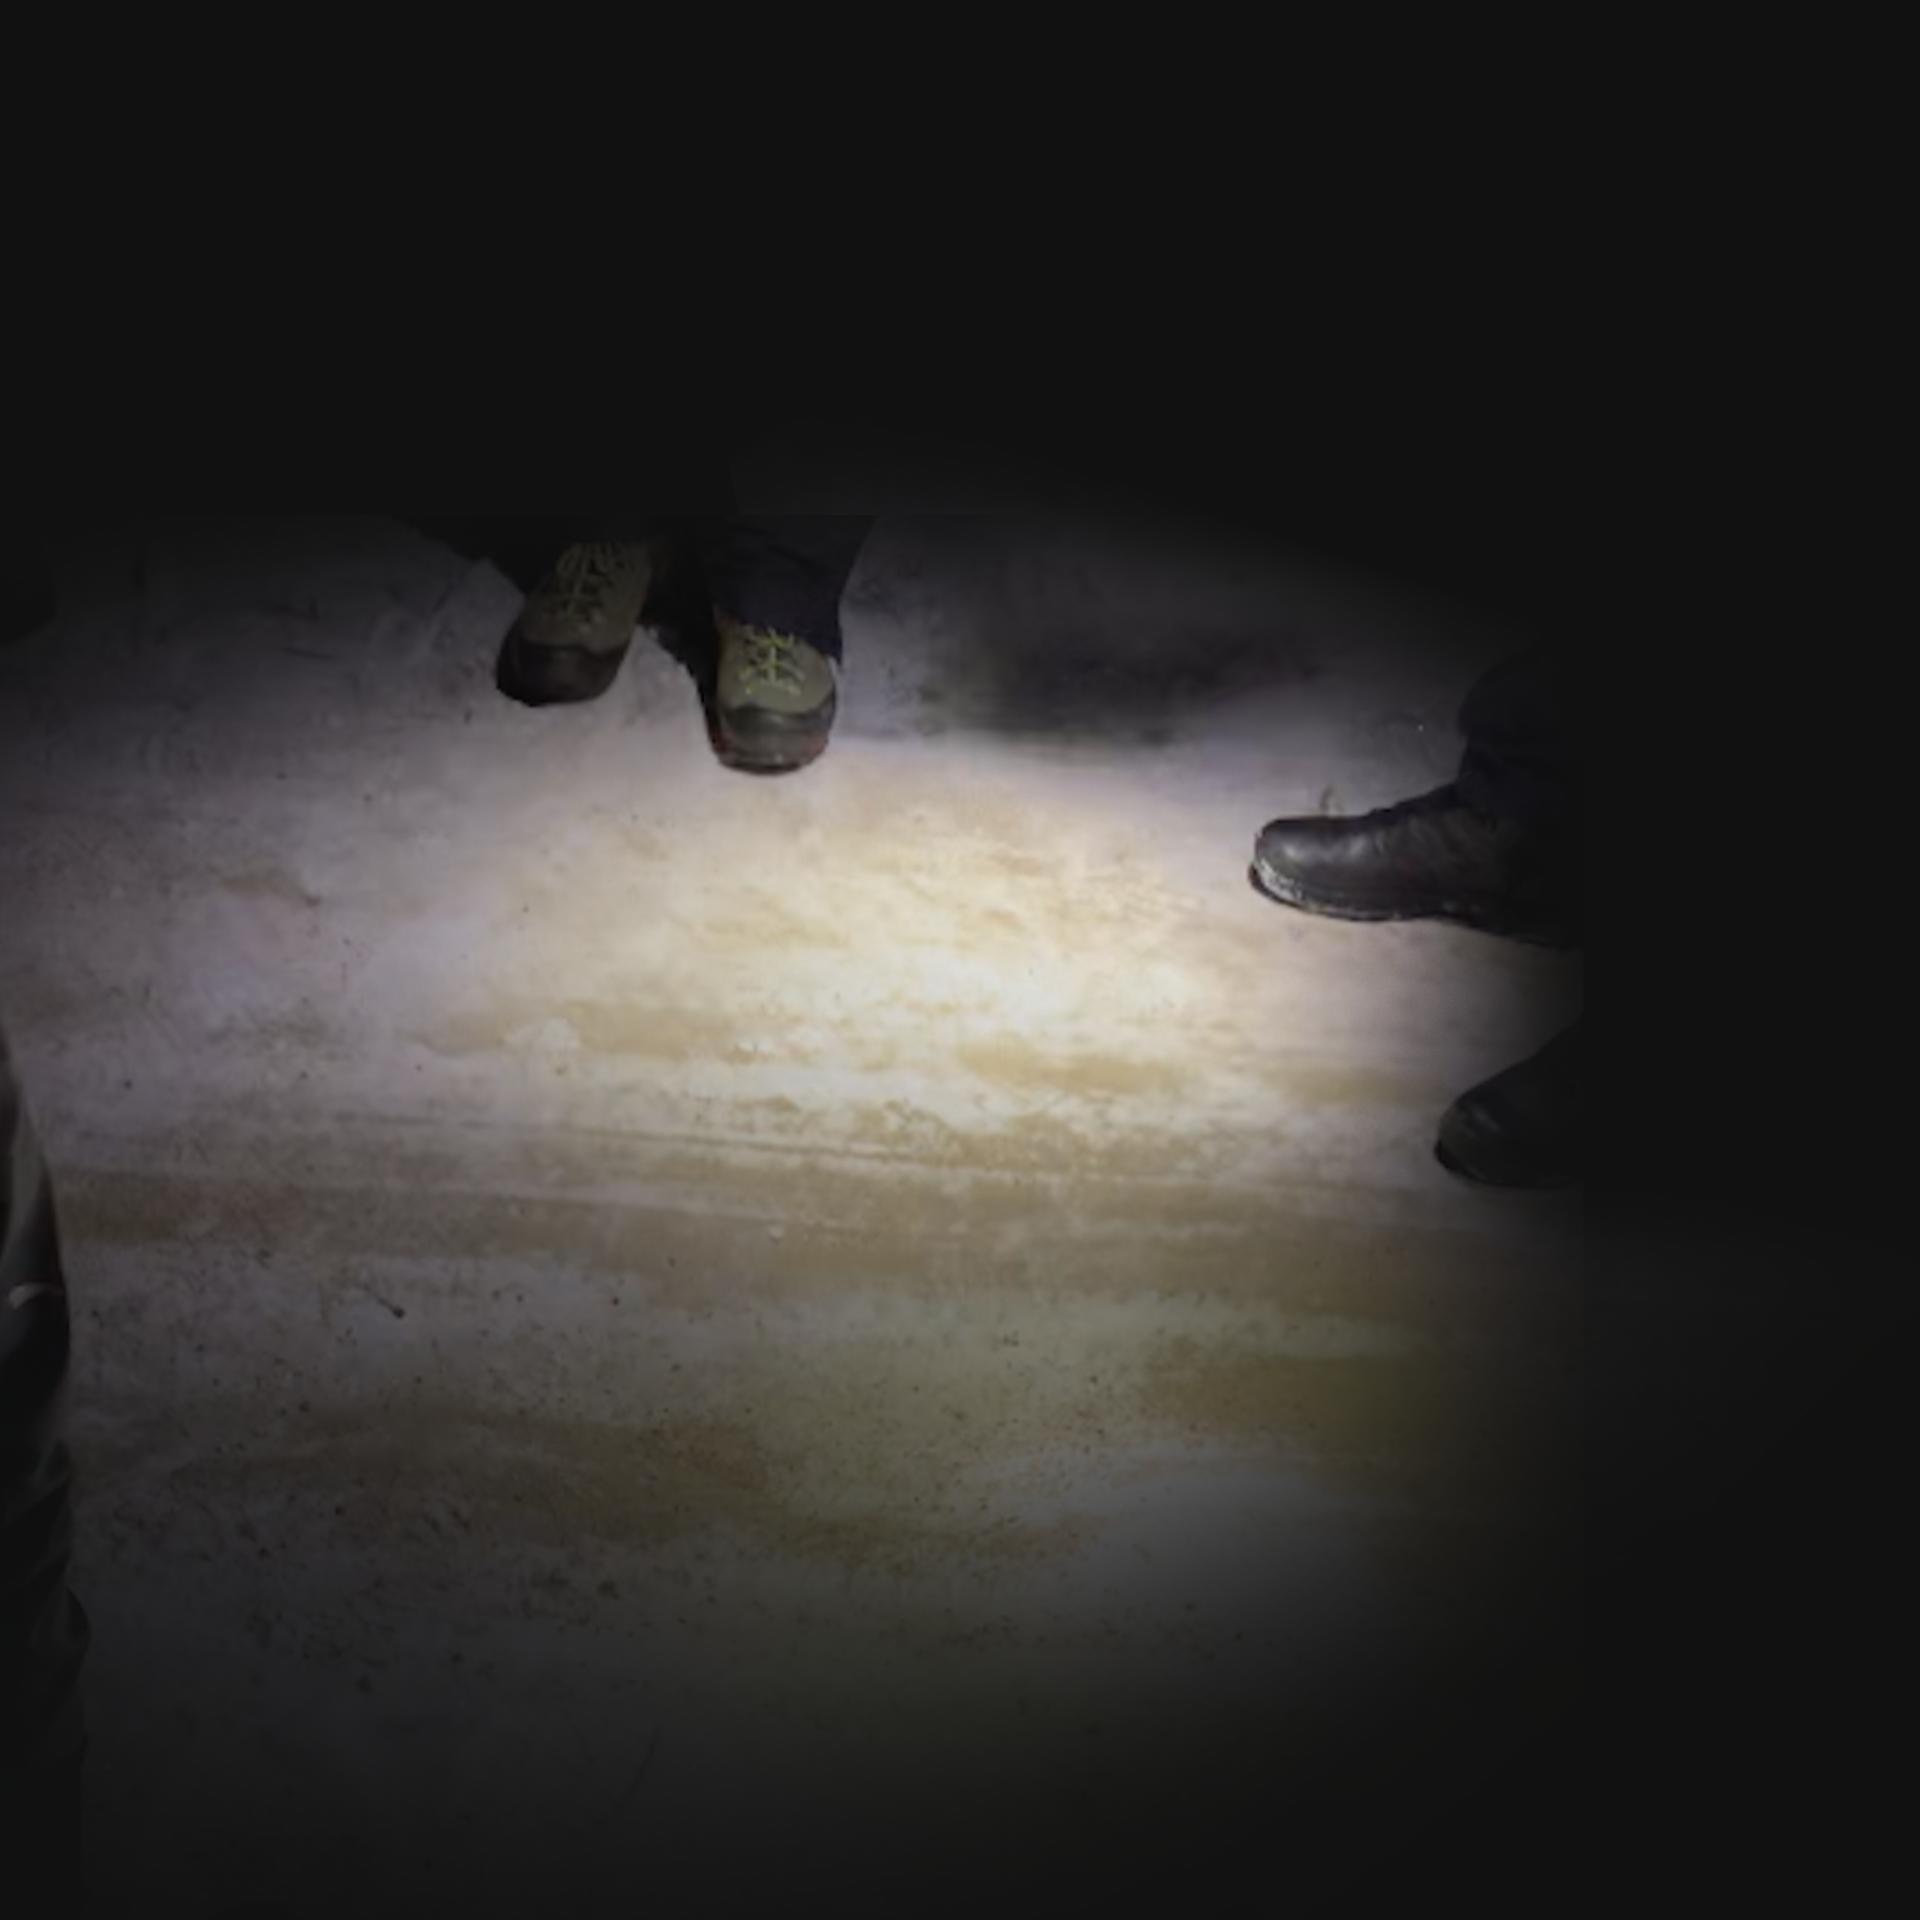 Zdjęcie wykonane w nocy, widoczne są na nim dwie pary butów na piaskowej, oszronionej drodze